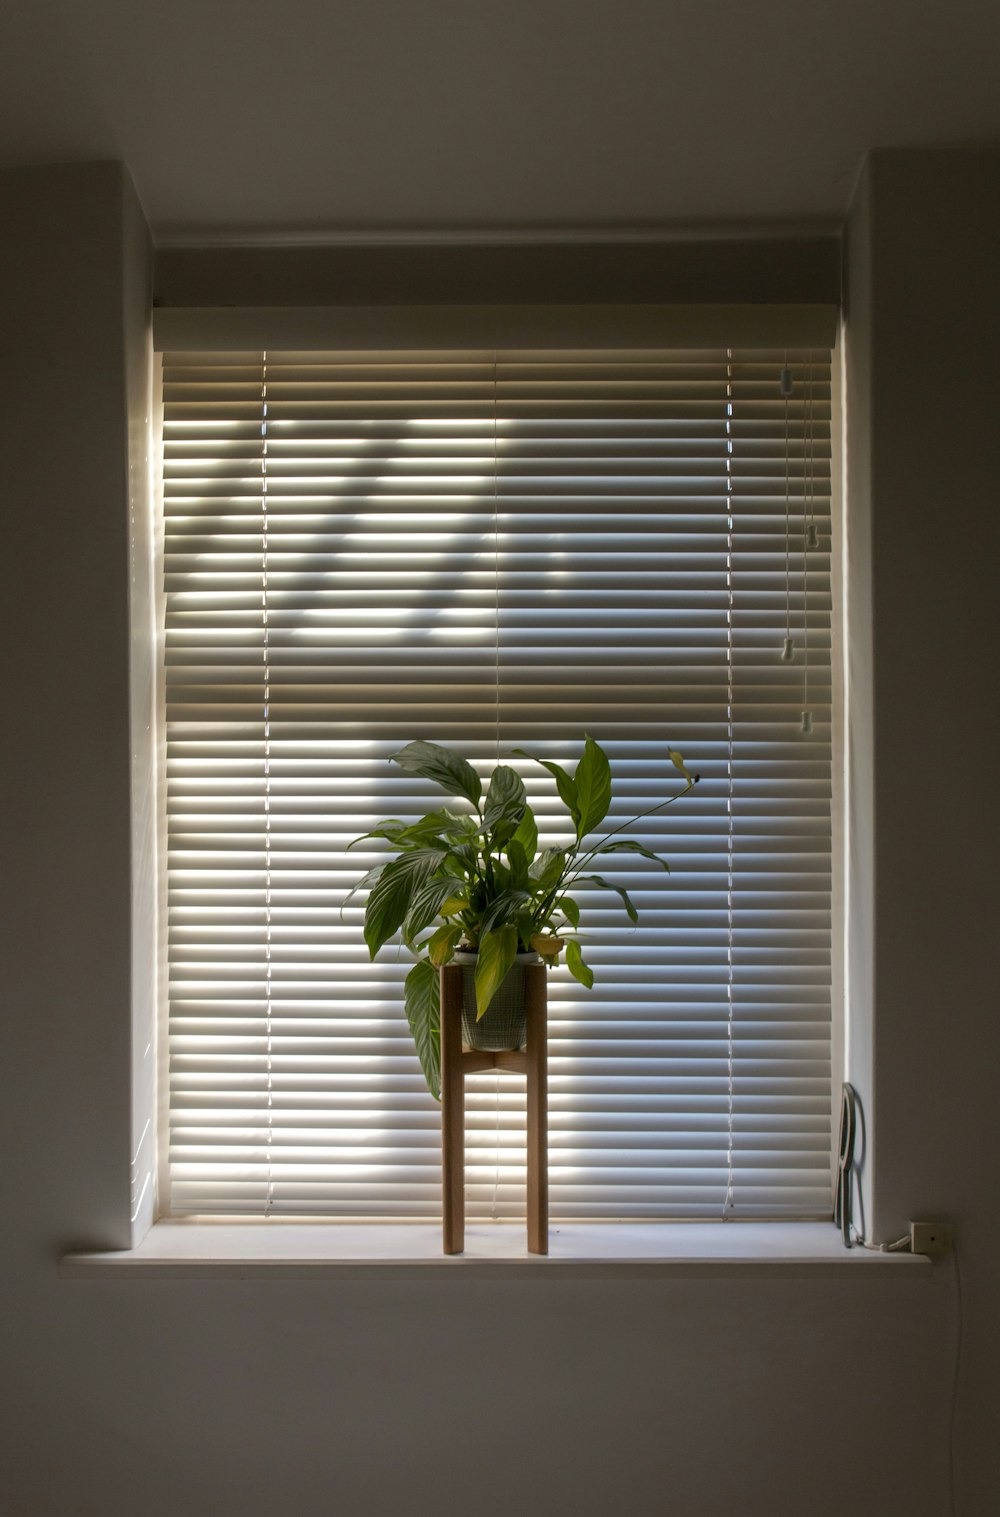 Planta verde en maceta al lado de las persianas de las ventanas